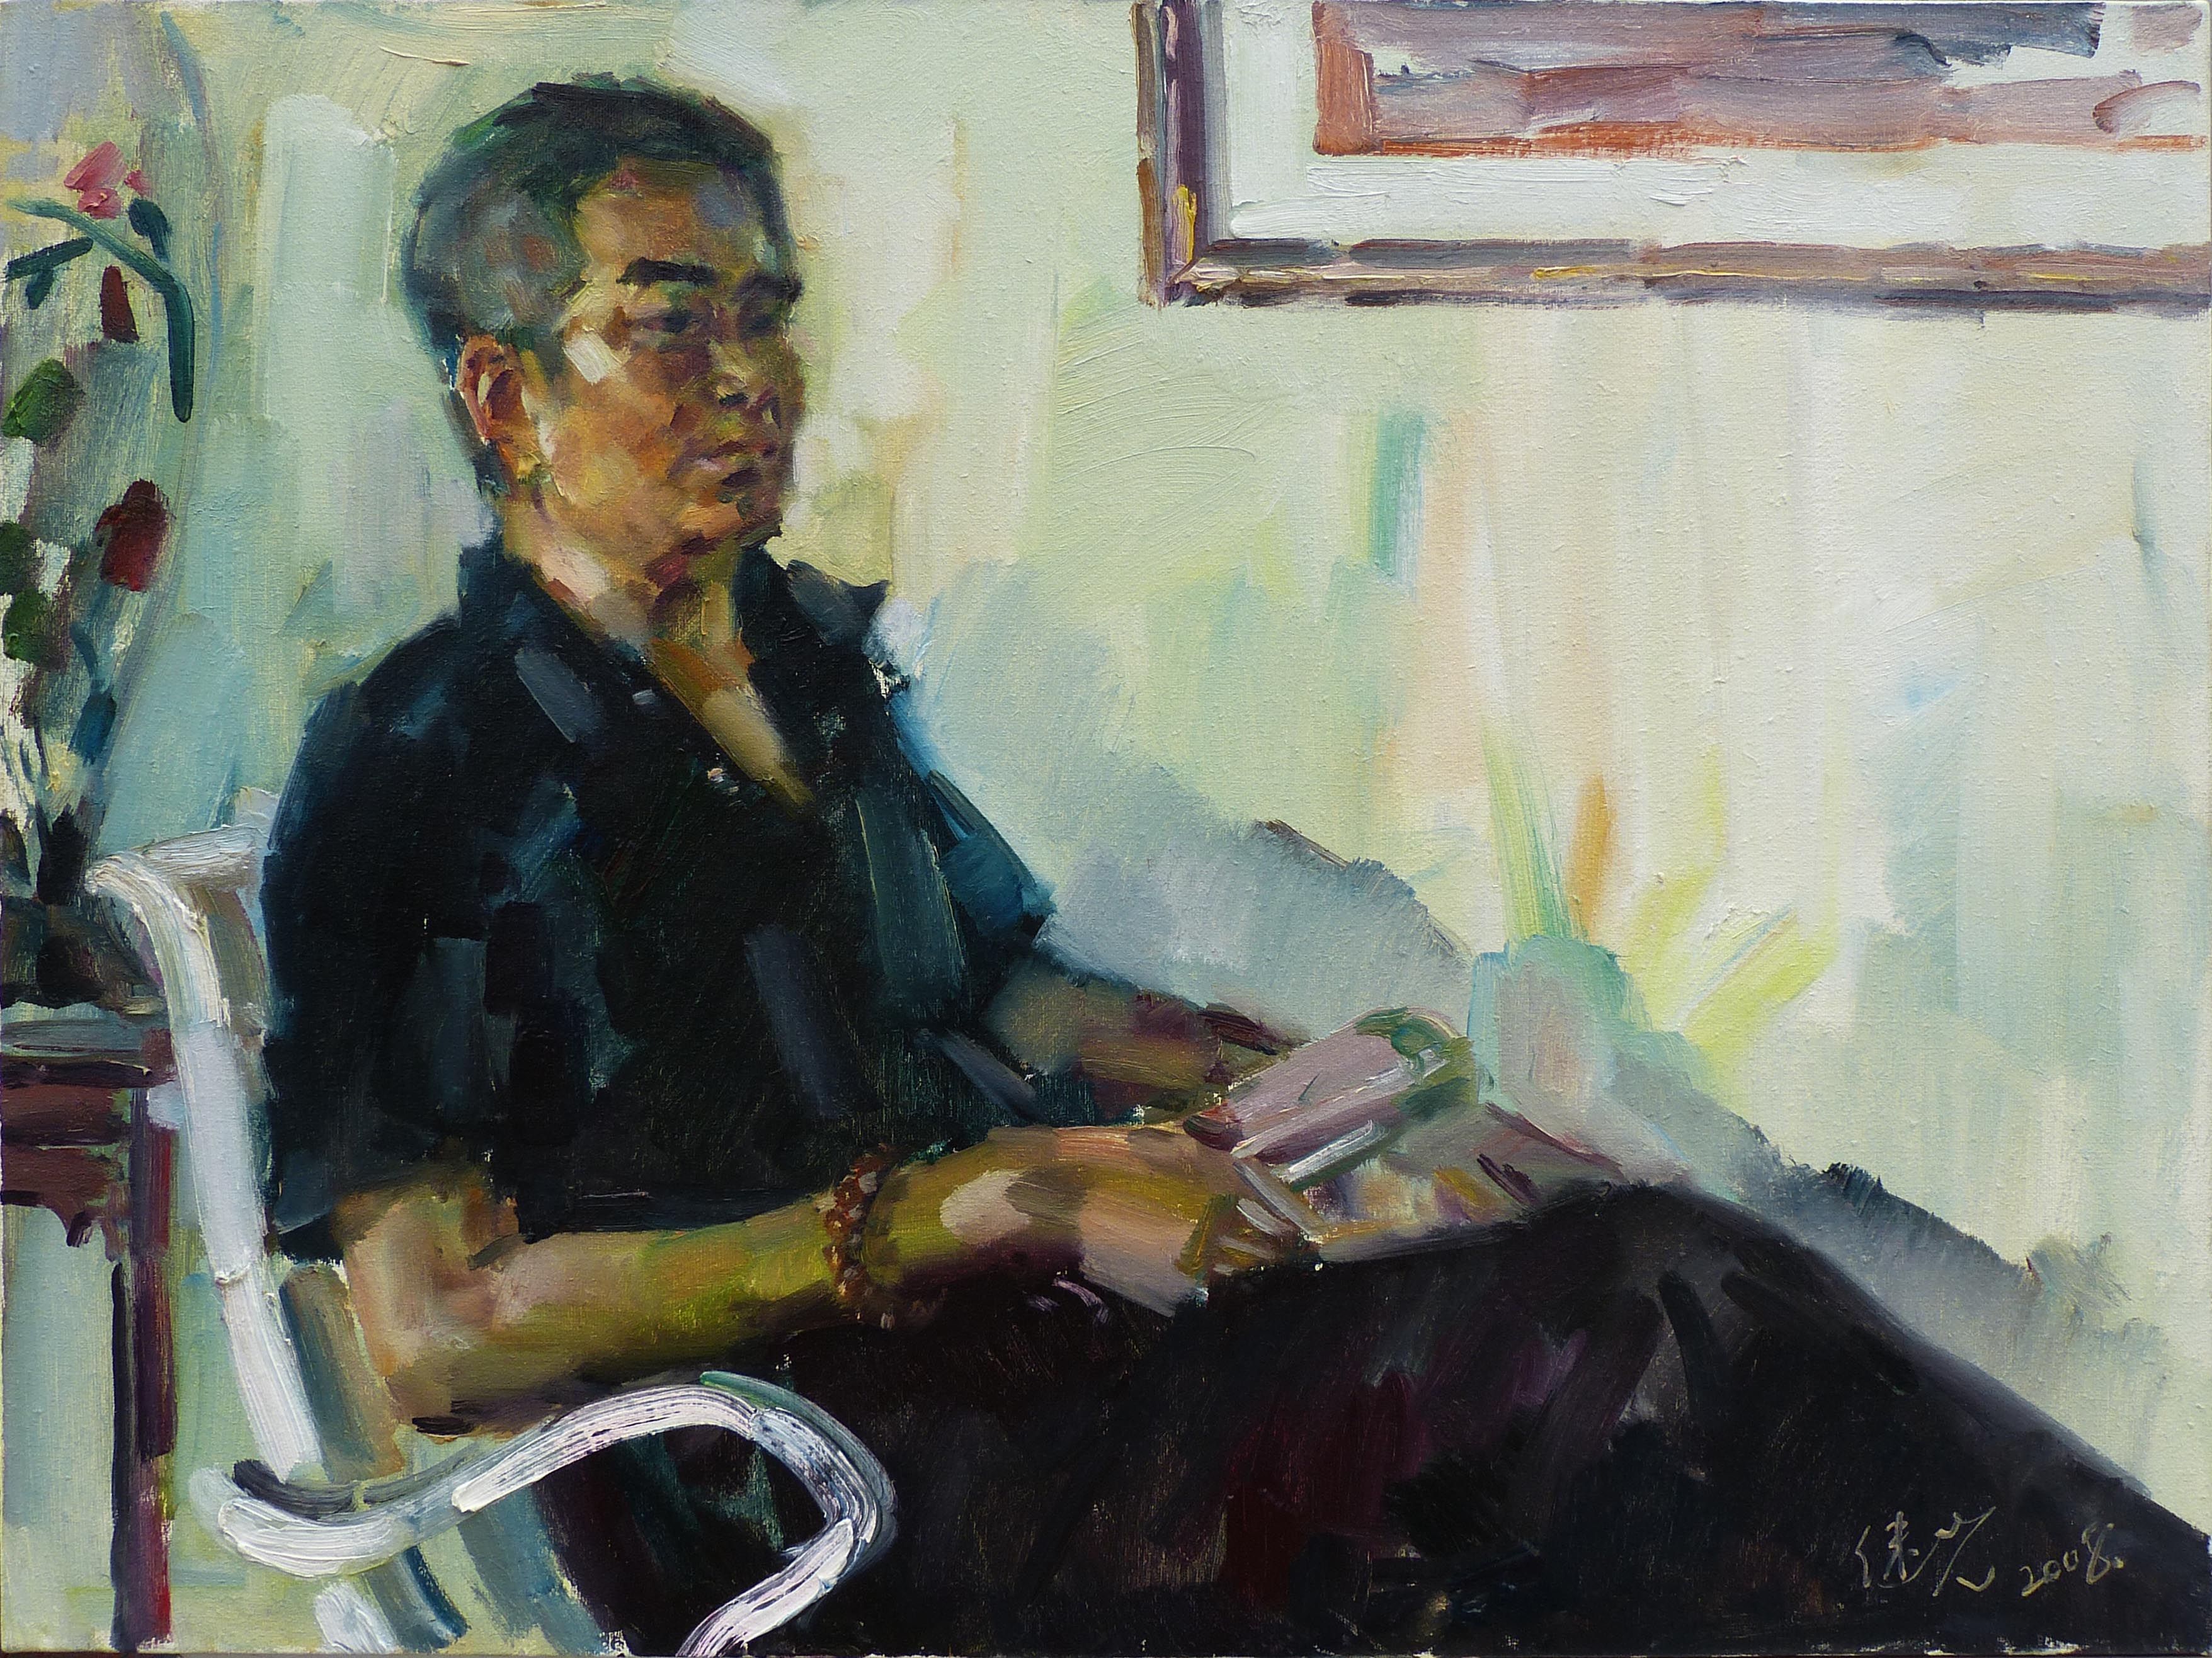 【中国油画】王继先 静坐的男人  2008年 60 x 80cm